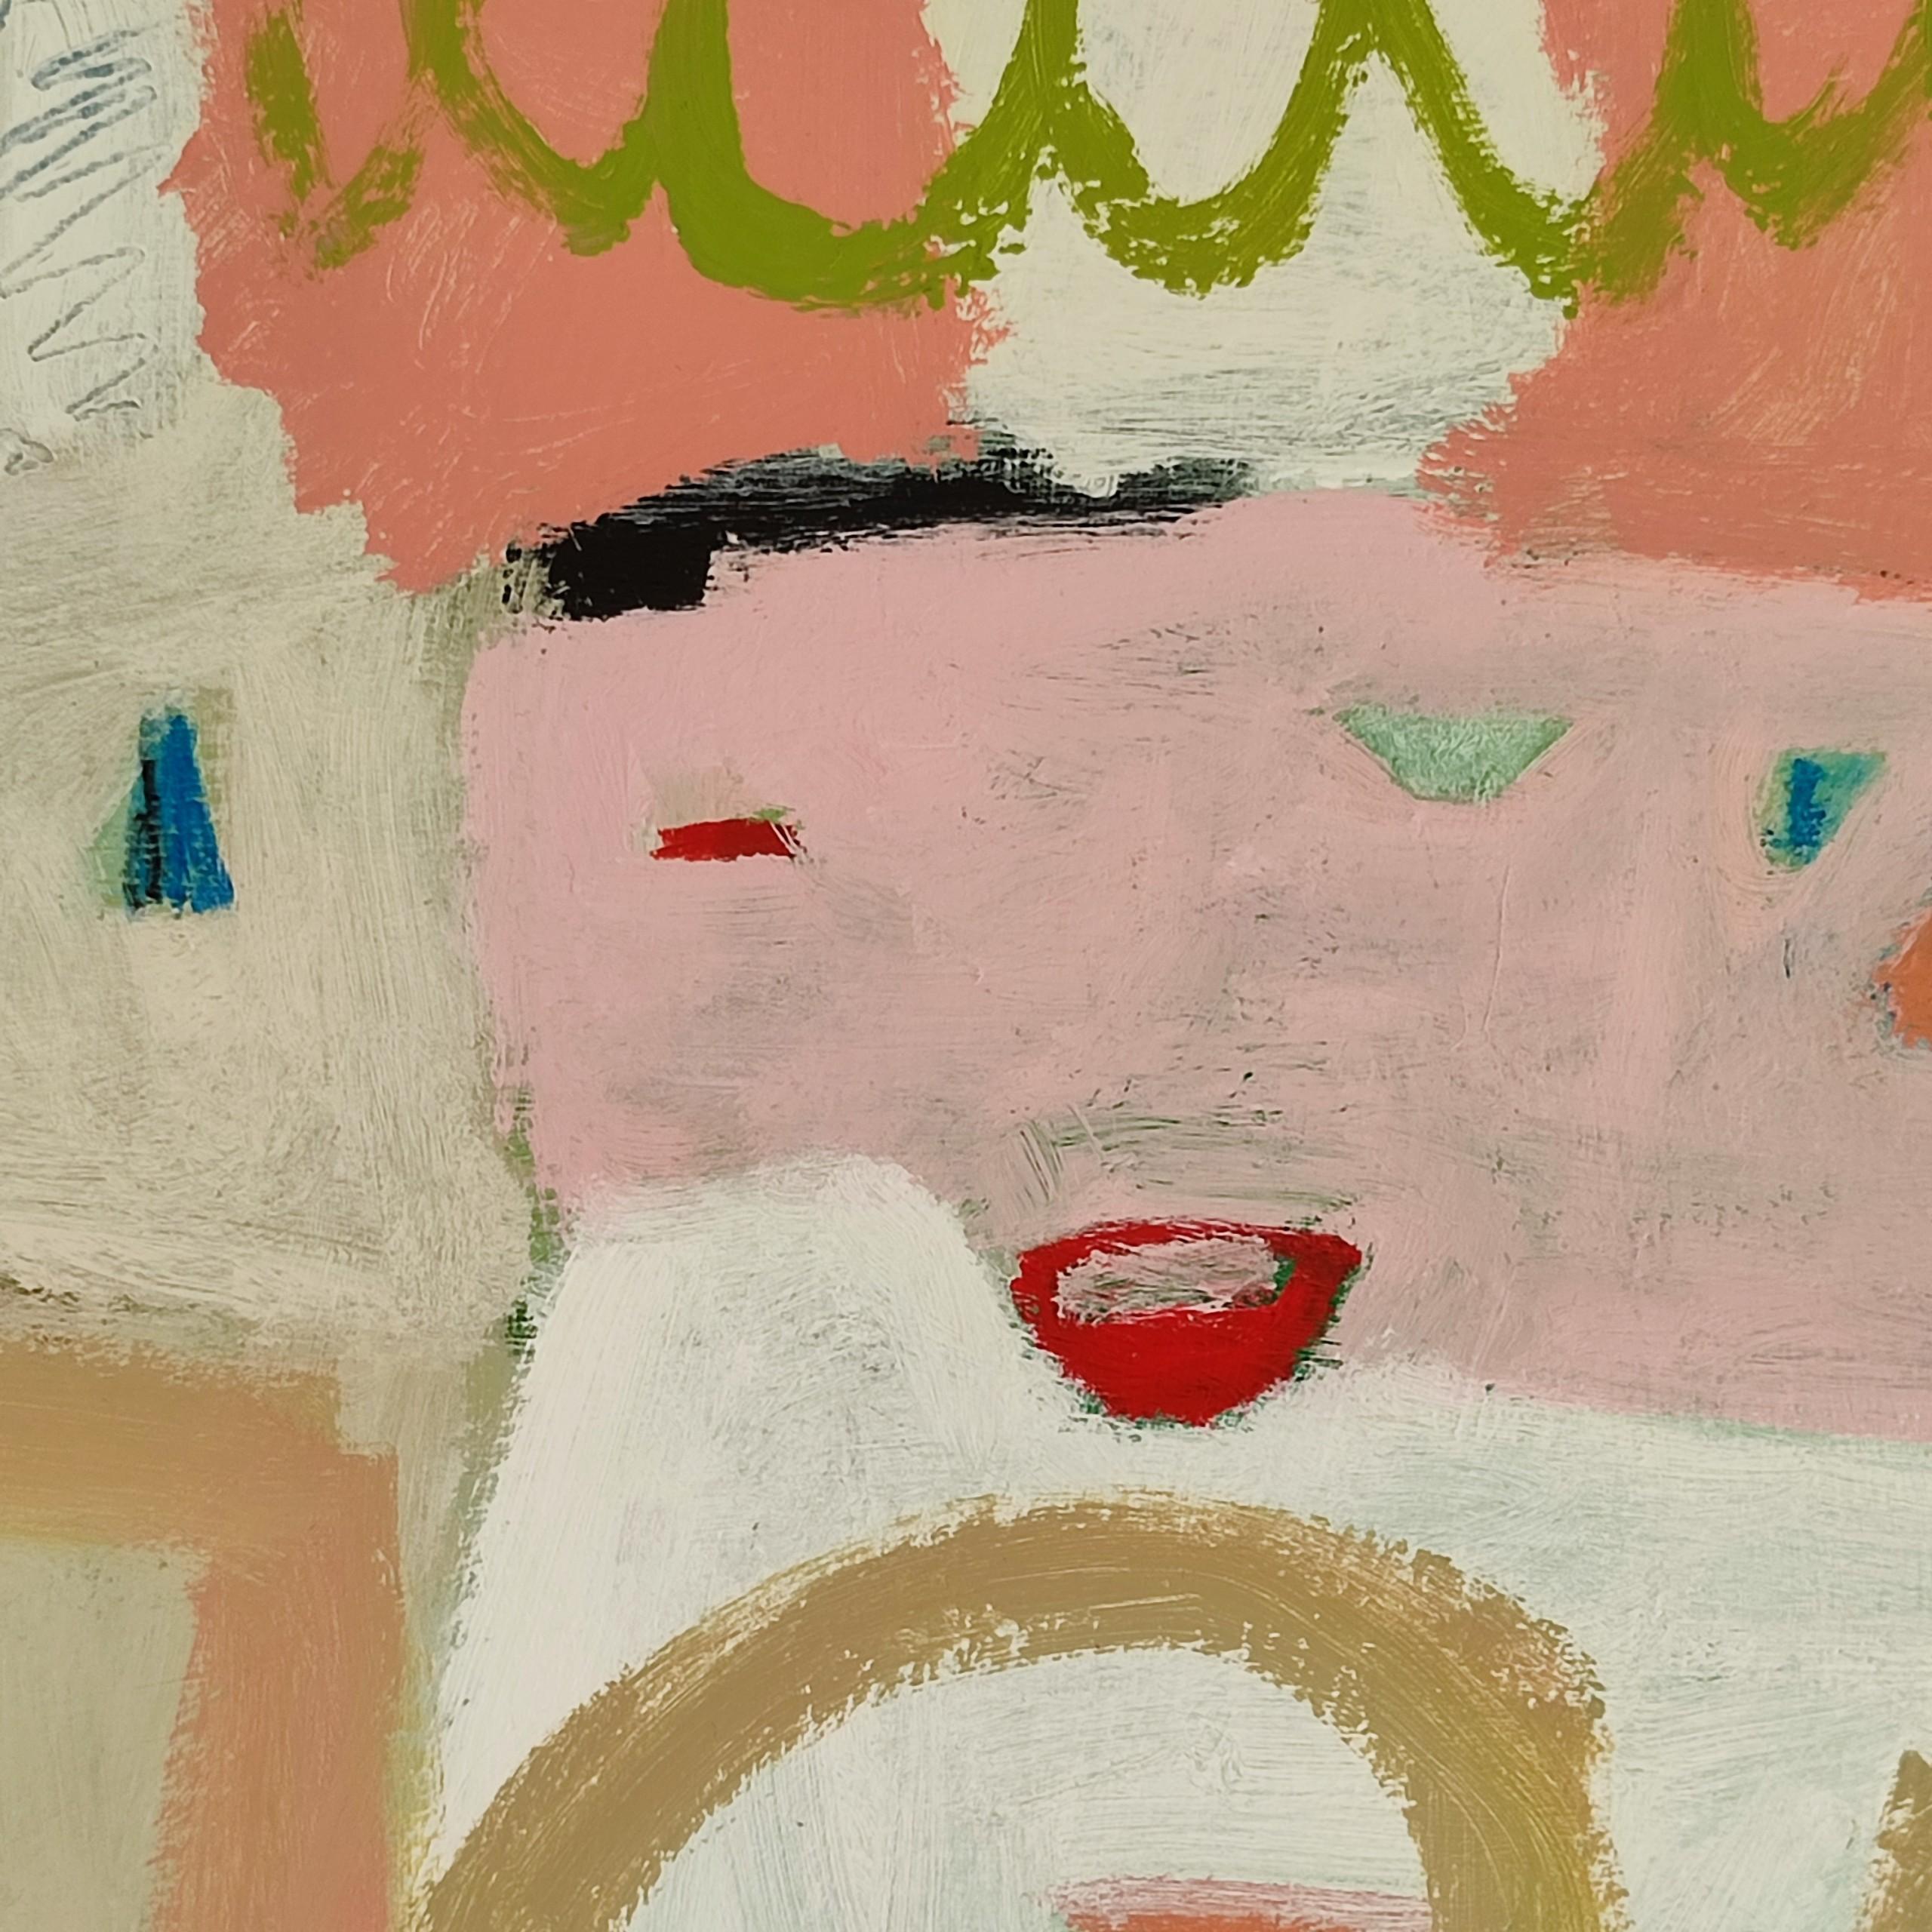 Un jour à célébrer. Une peinture abstraite originale de Diane Whalley. Dans un cadre en bois blanc [2021]

original
acrylique sur toile
Taille de l'image : H:60 cm x L:60 cm
Taille complète de l'œuvre non encadrée : H:60 cm x L:60 cm x P:2cm
Taille